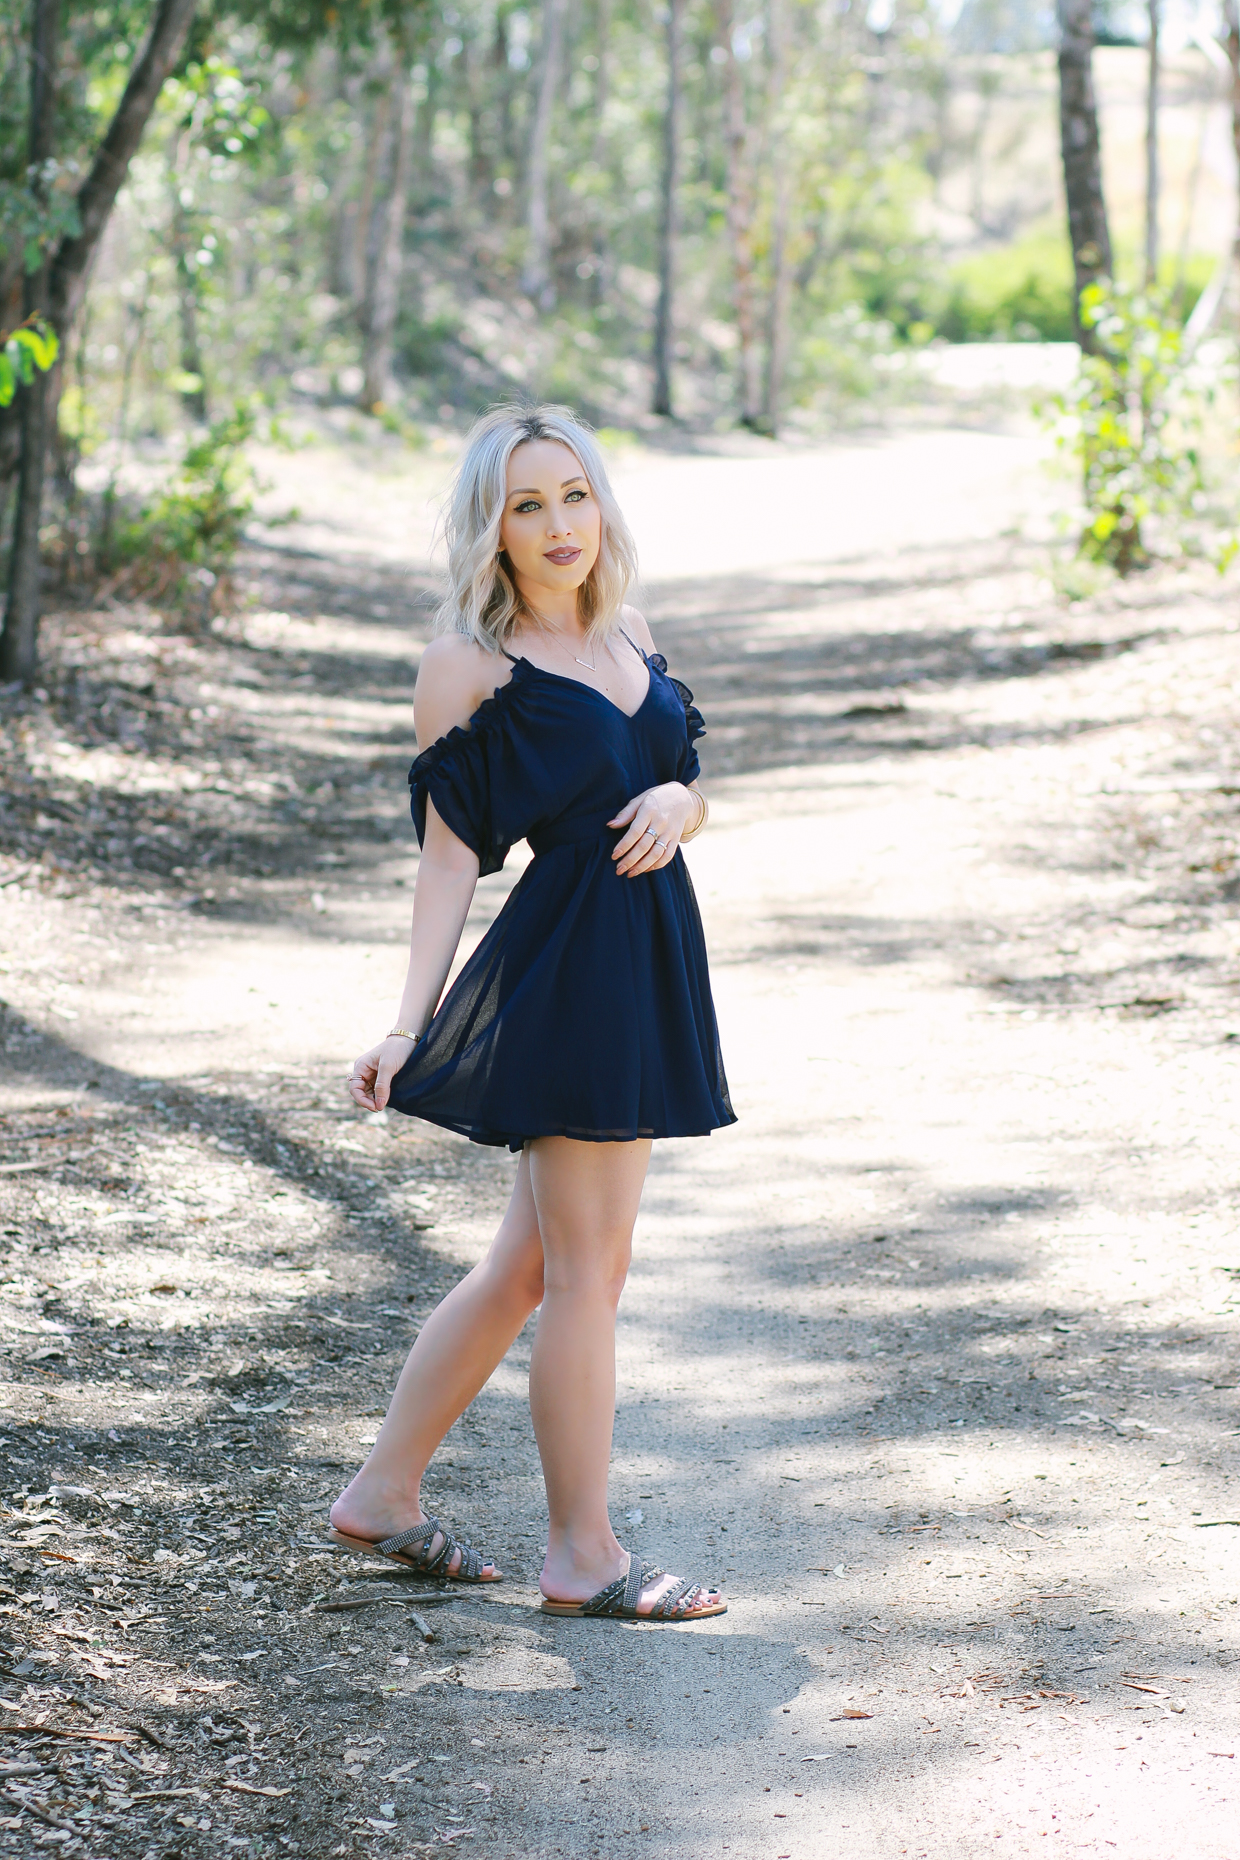 Blondie in the City | Navy Blue Chiffon Dress, Cutout Ruffle Shoulders @shoptobi